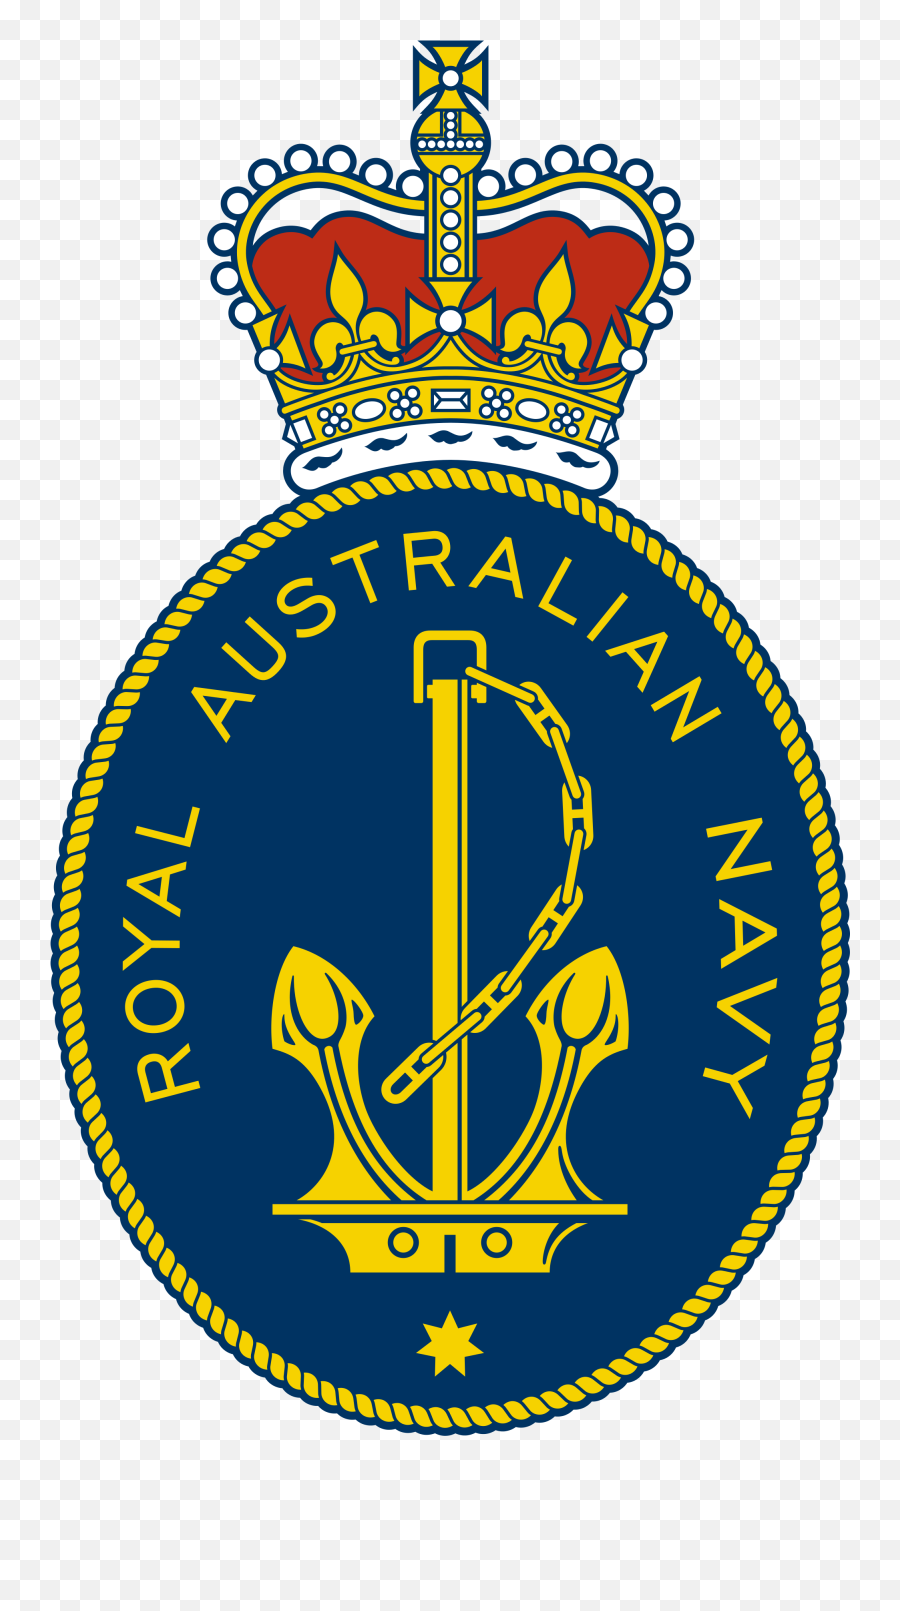 Royal Australian Navy Logo Png Image - Royal Australian Navy Logo,Navy Logo Png